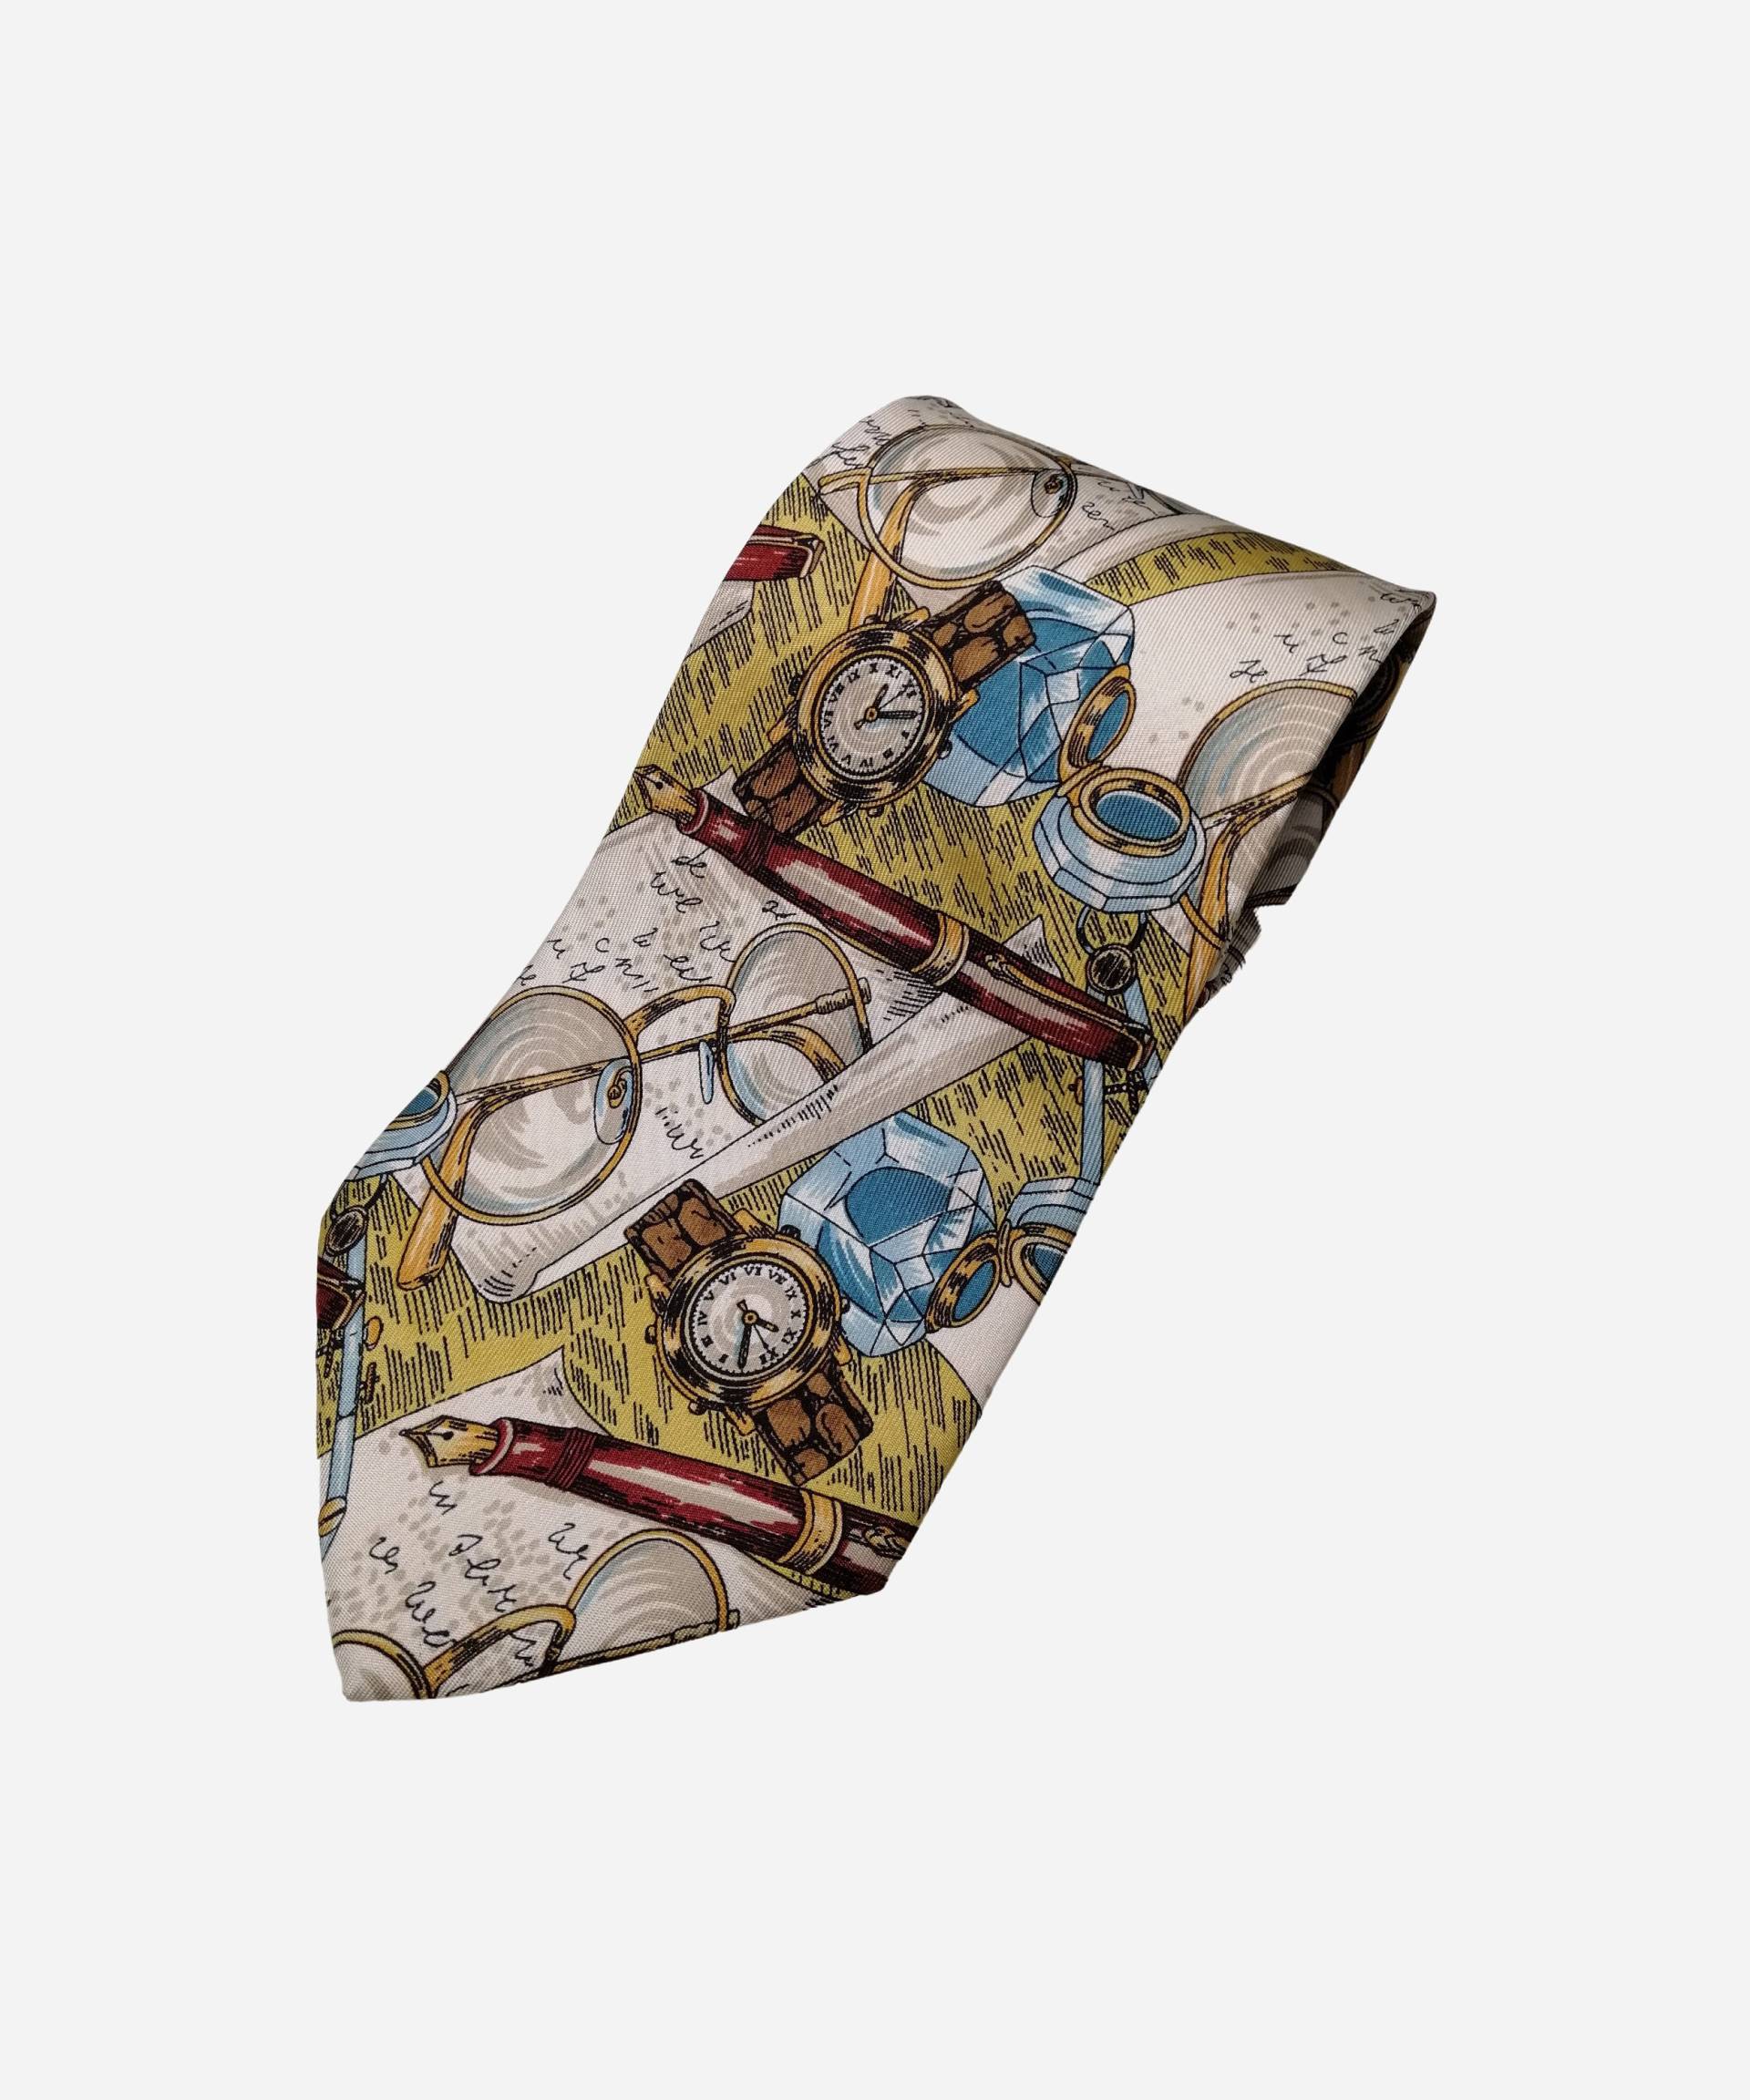 Hugo Boss Vintage Herren Seidenkrawatte Bedruckt Unikat Krawatte Für Ihn Geschenk Anwalt Made in Italy von MolinelliVintage